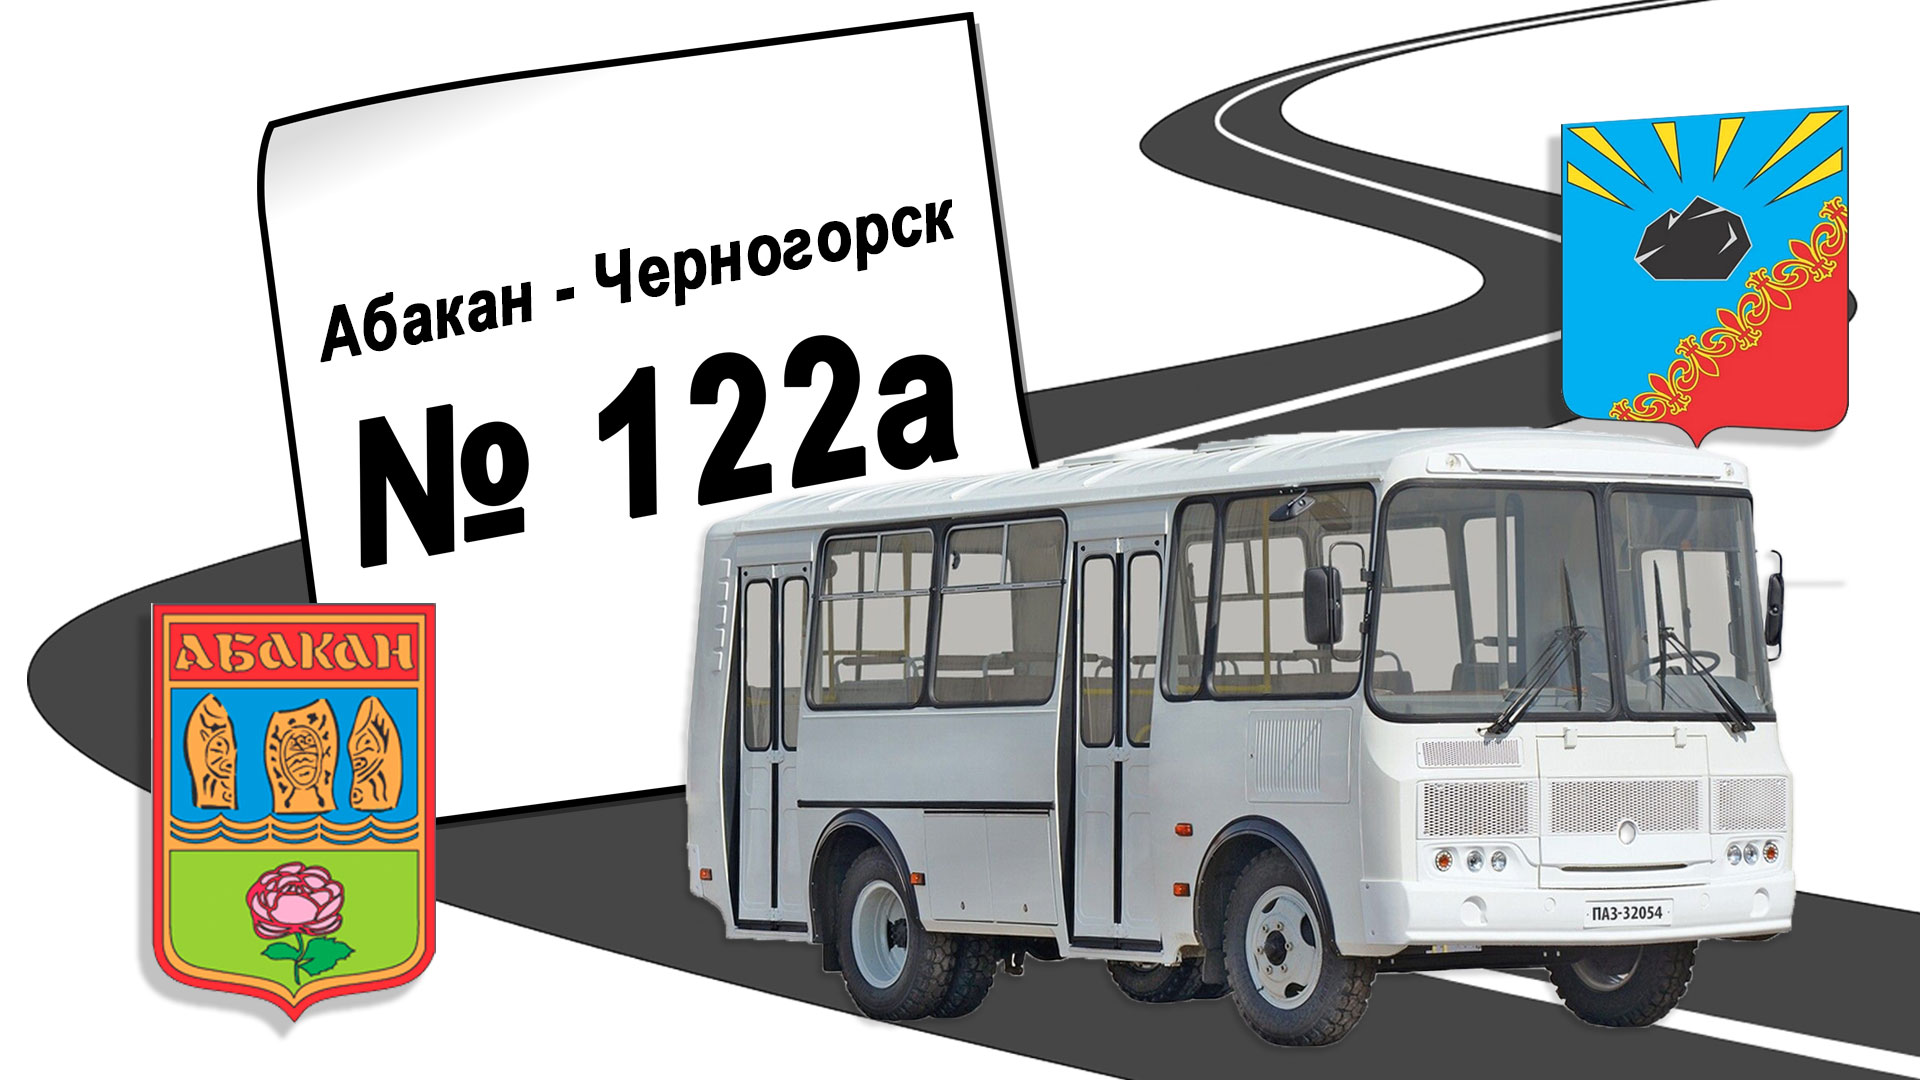 Расписание автобуса № 122а, Абакан - Черногорск.